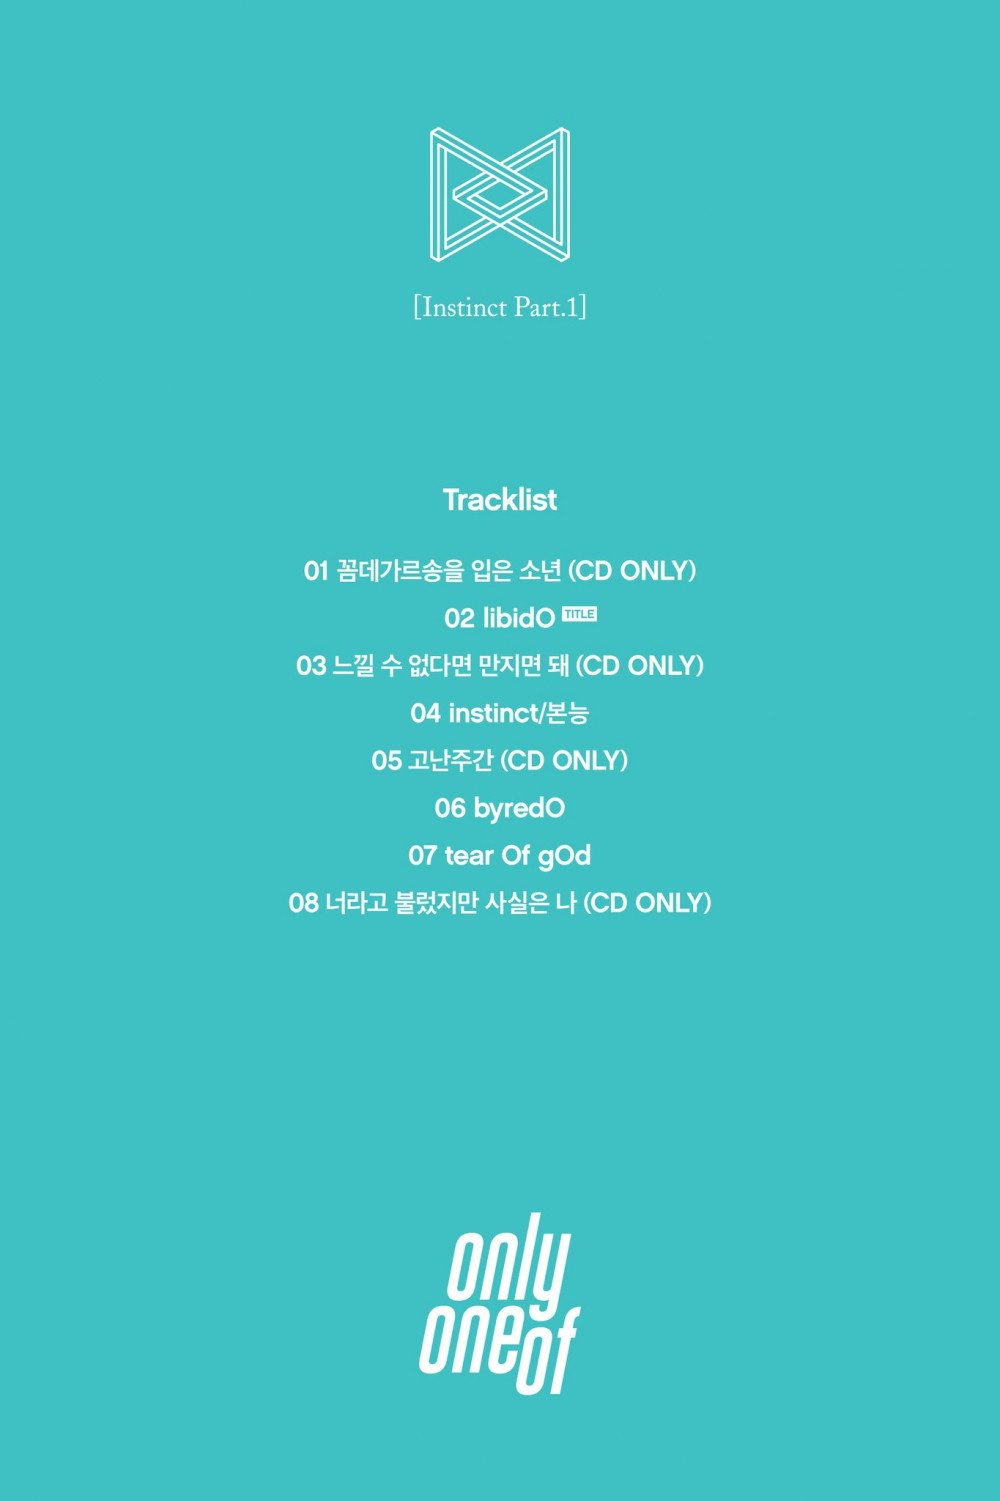 [Камбэк] OnlyOneOf альбом "Instinct Part 1": превью альбома + 2-ой тизер клипа